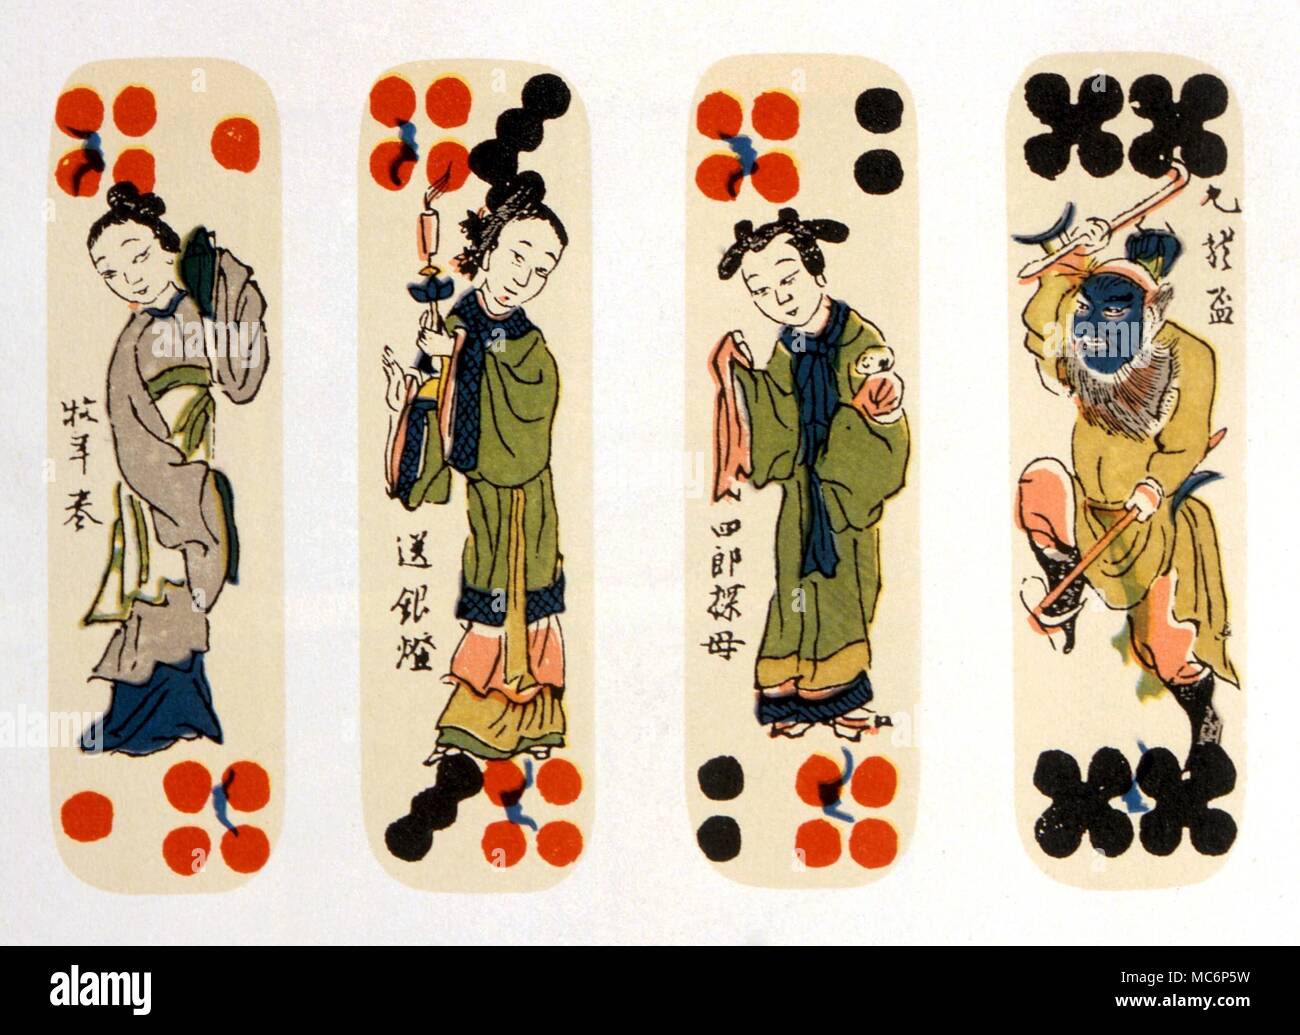 Chinois jeux cartes domino, avec certains des caractères de 'l'histoire de la banque du fleuve'. Ces cartes sont utilisées à la fois comme un jeu et dans un simple système de divination. À partir de l'édition de 1930 de C P l'histoire Hargave de cartes à jouer Banque D'Images